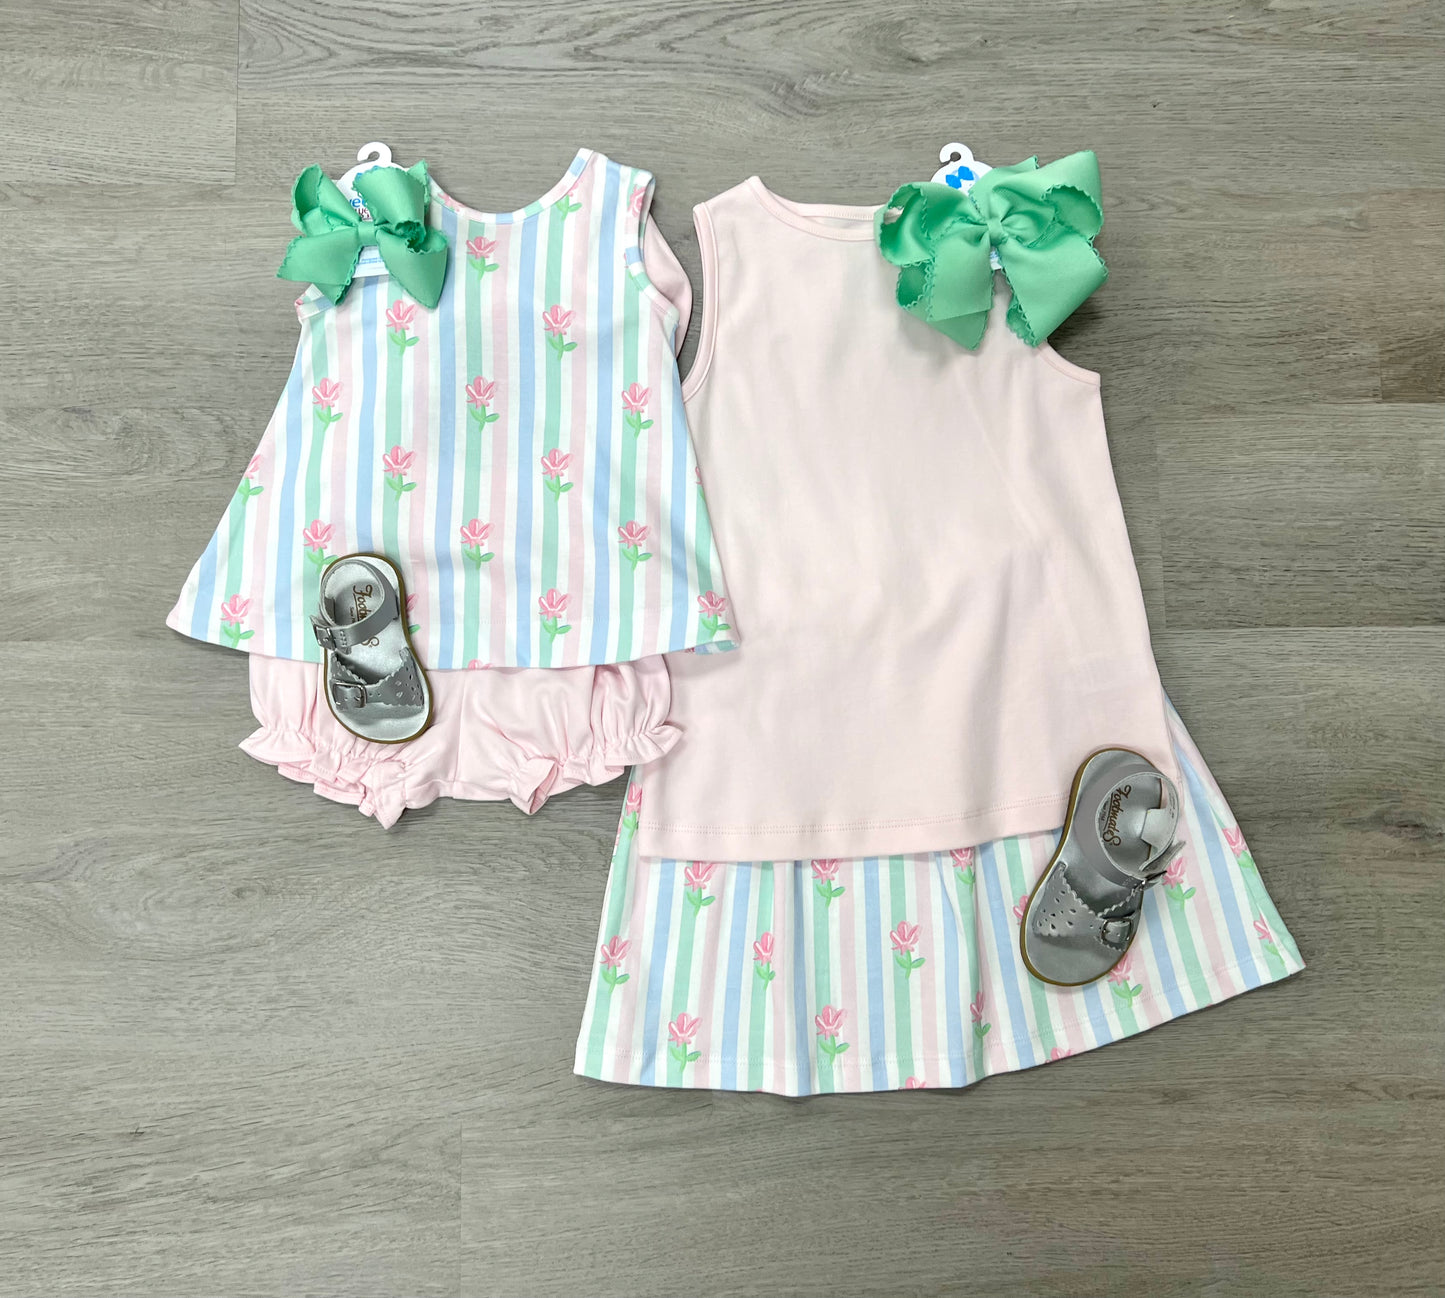 Sage Knit Skirt Set - Floral Pastel Stripe Girls Play Dresses James & Lottie   